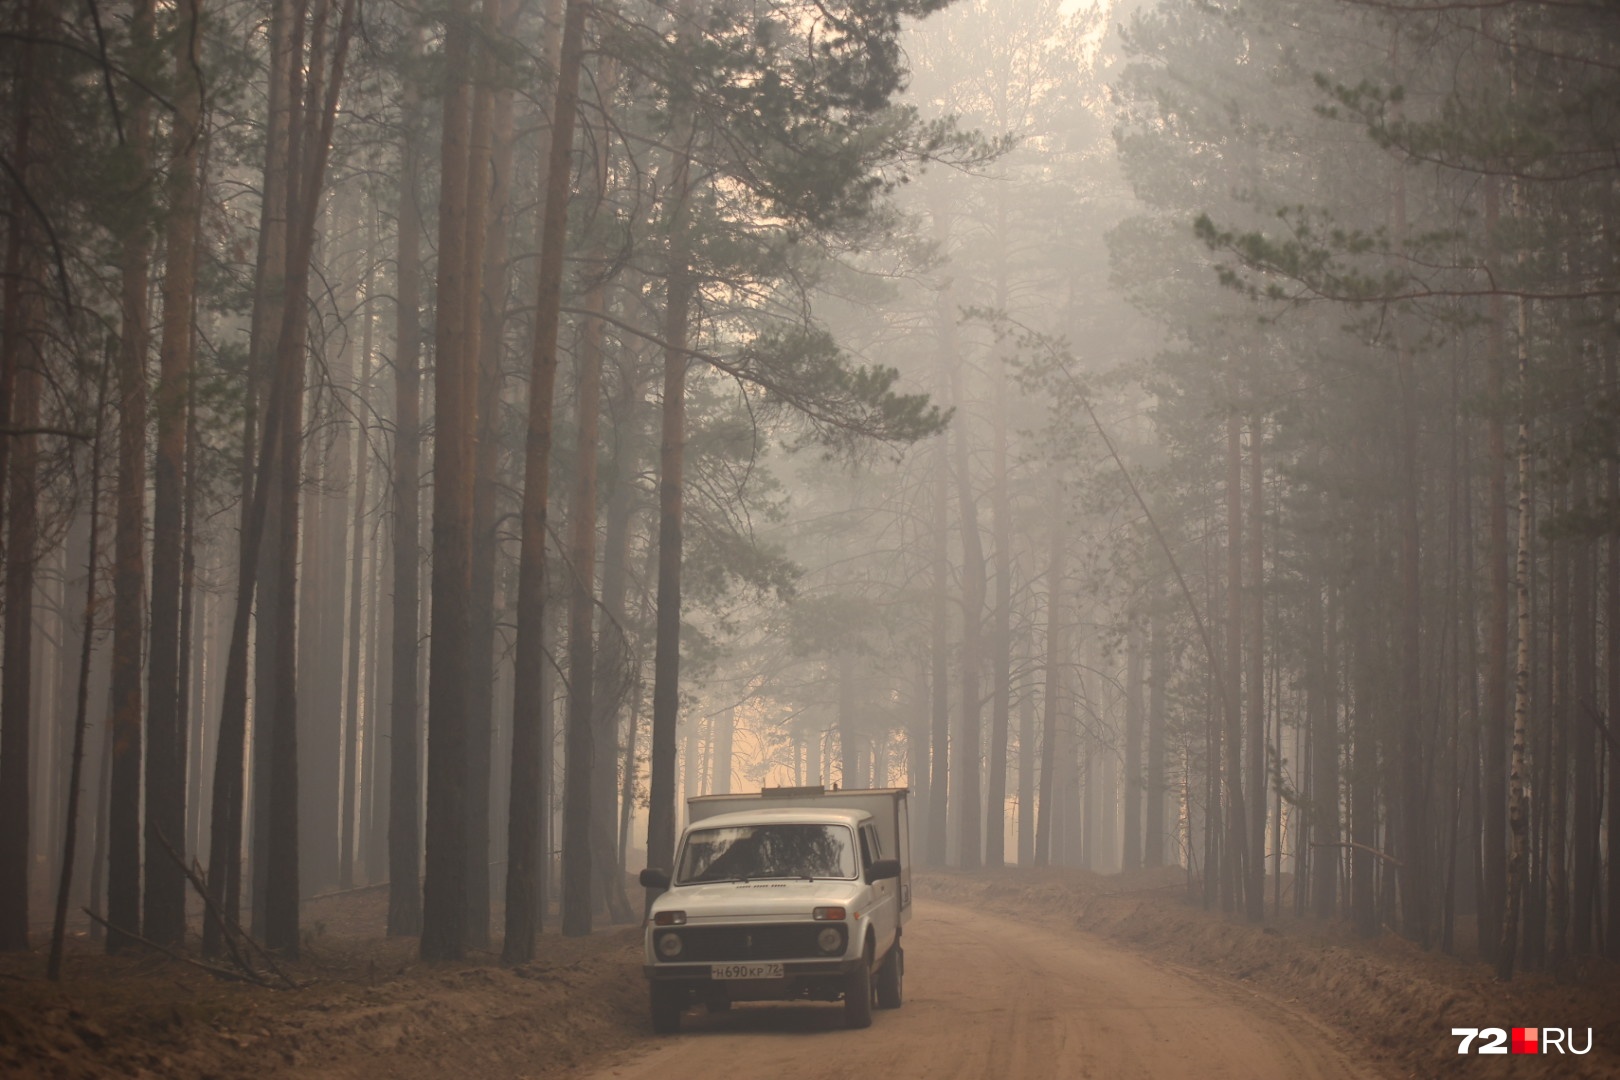 Весь лес в дыму. Специалисты не советуют оставаться долго в задымленном месте